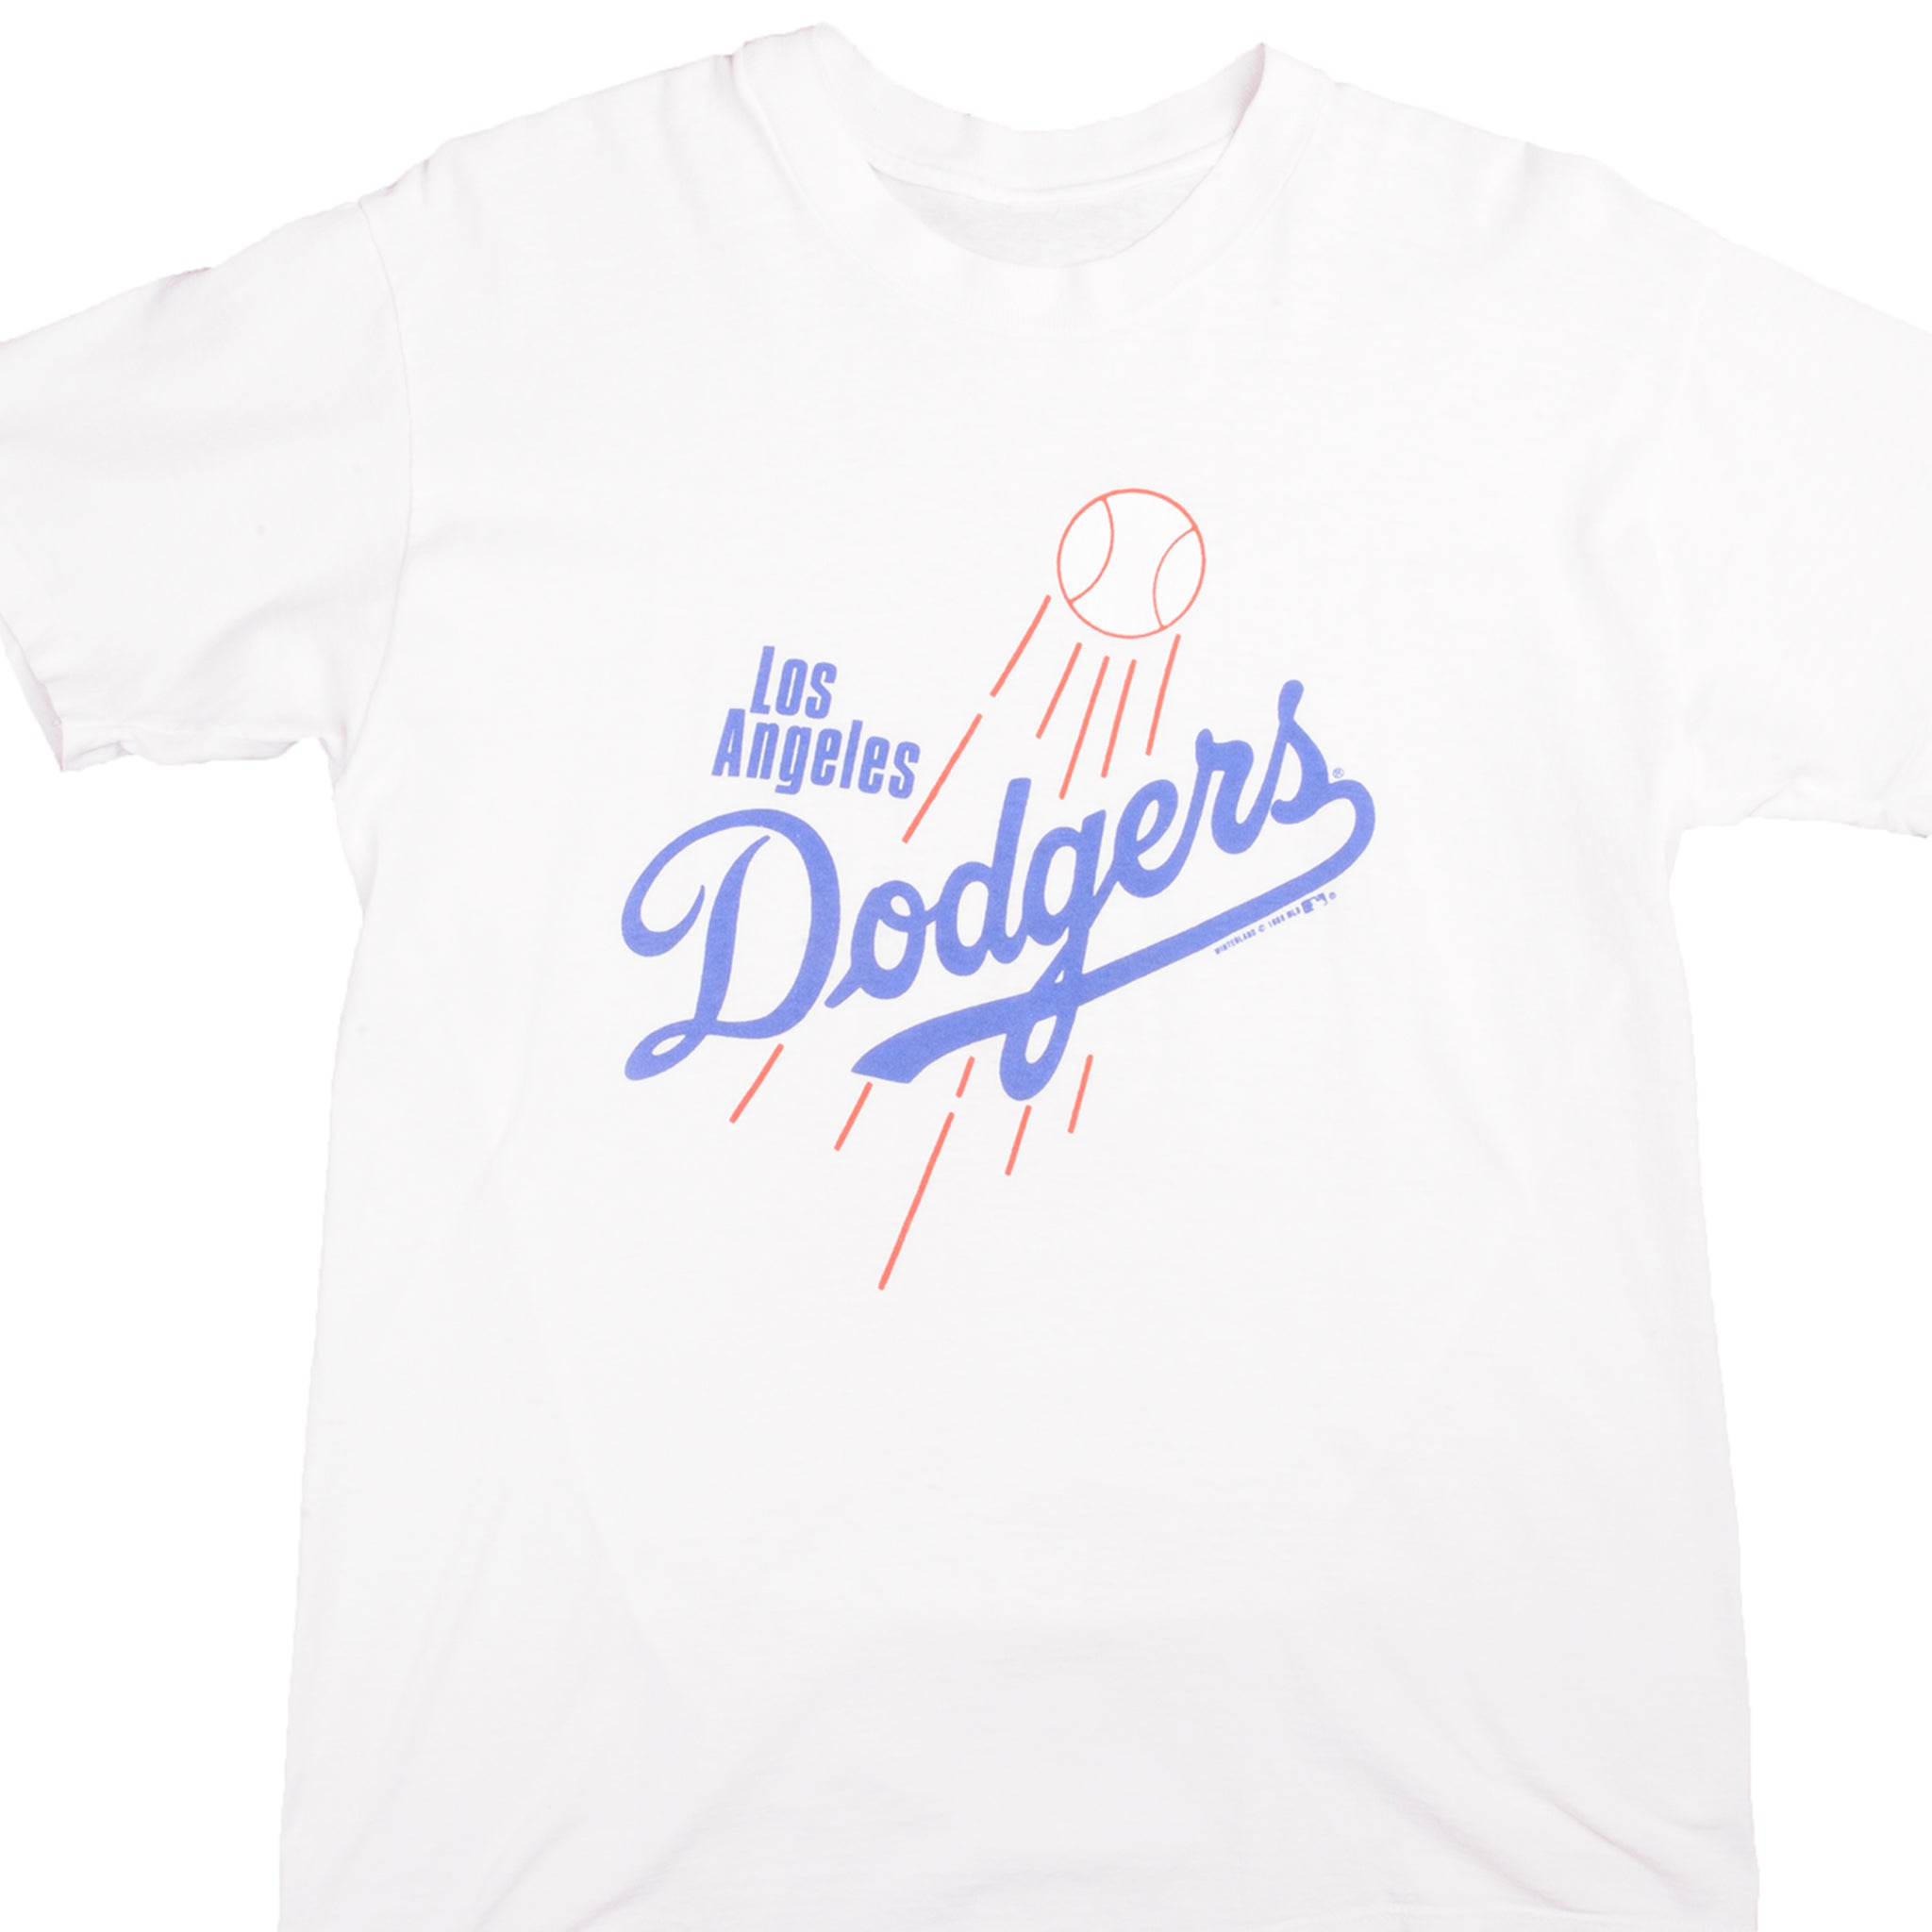 Dodgers T-shirt 1980s Vintage Baseball Tee -  Denmark